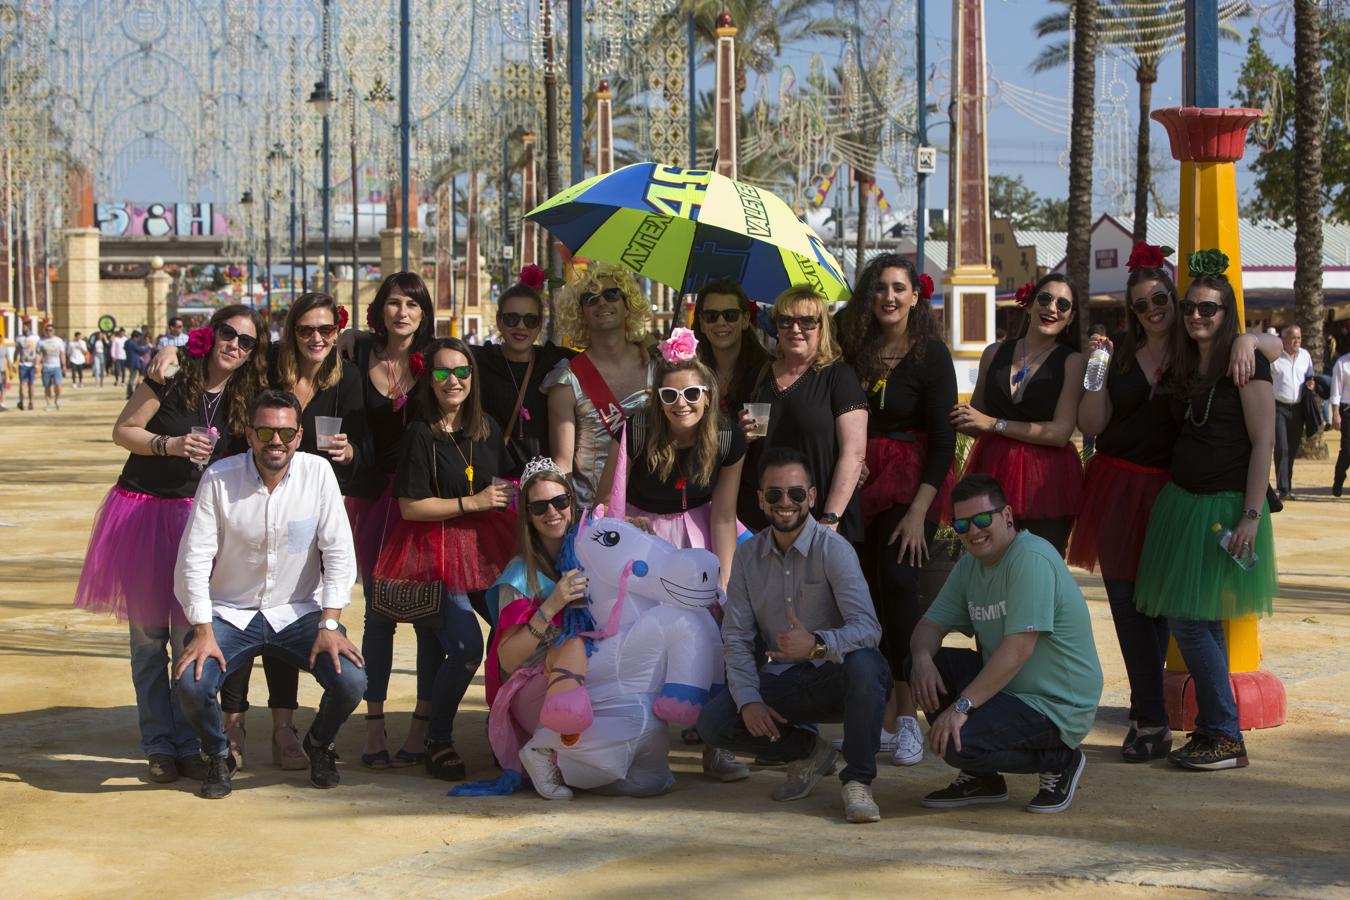 Las mejores imágenes del estreno de la Feria del Caballo de Jerez